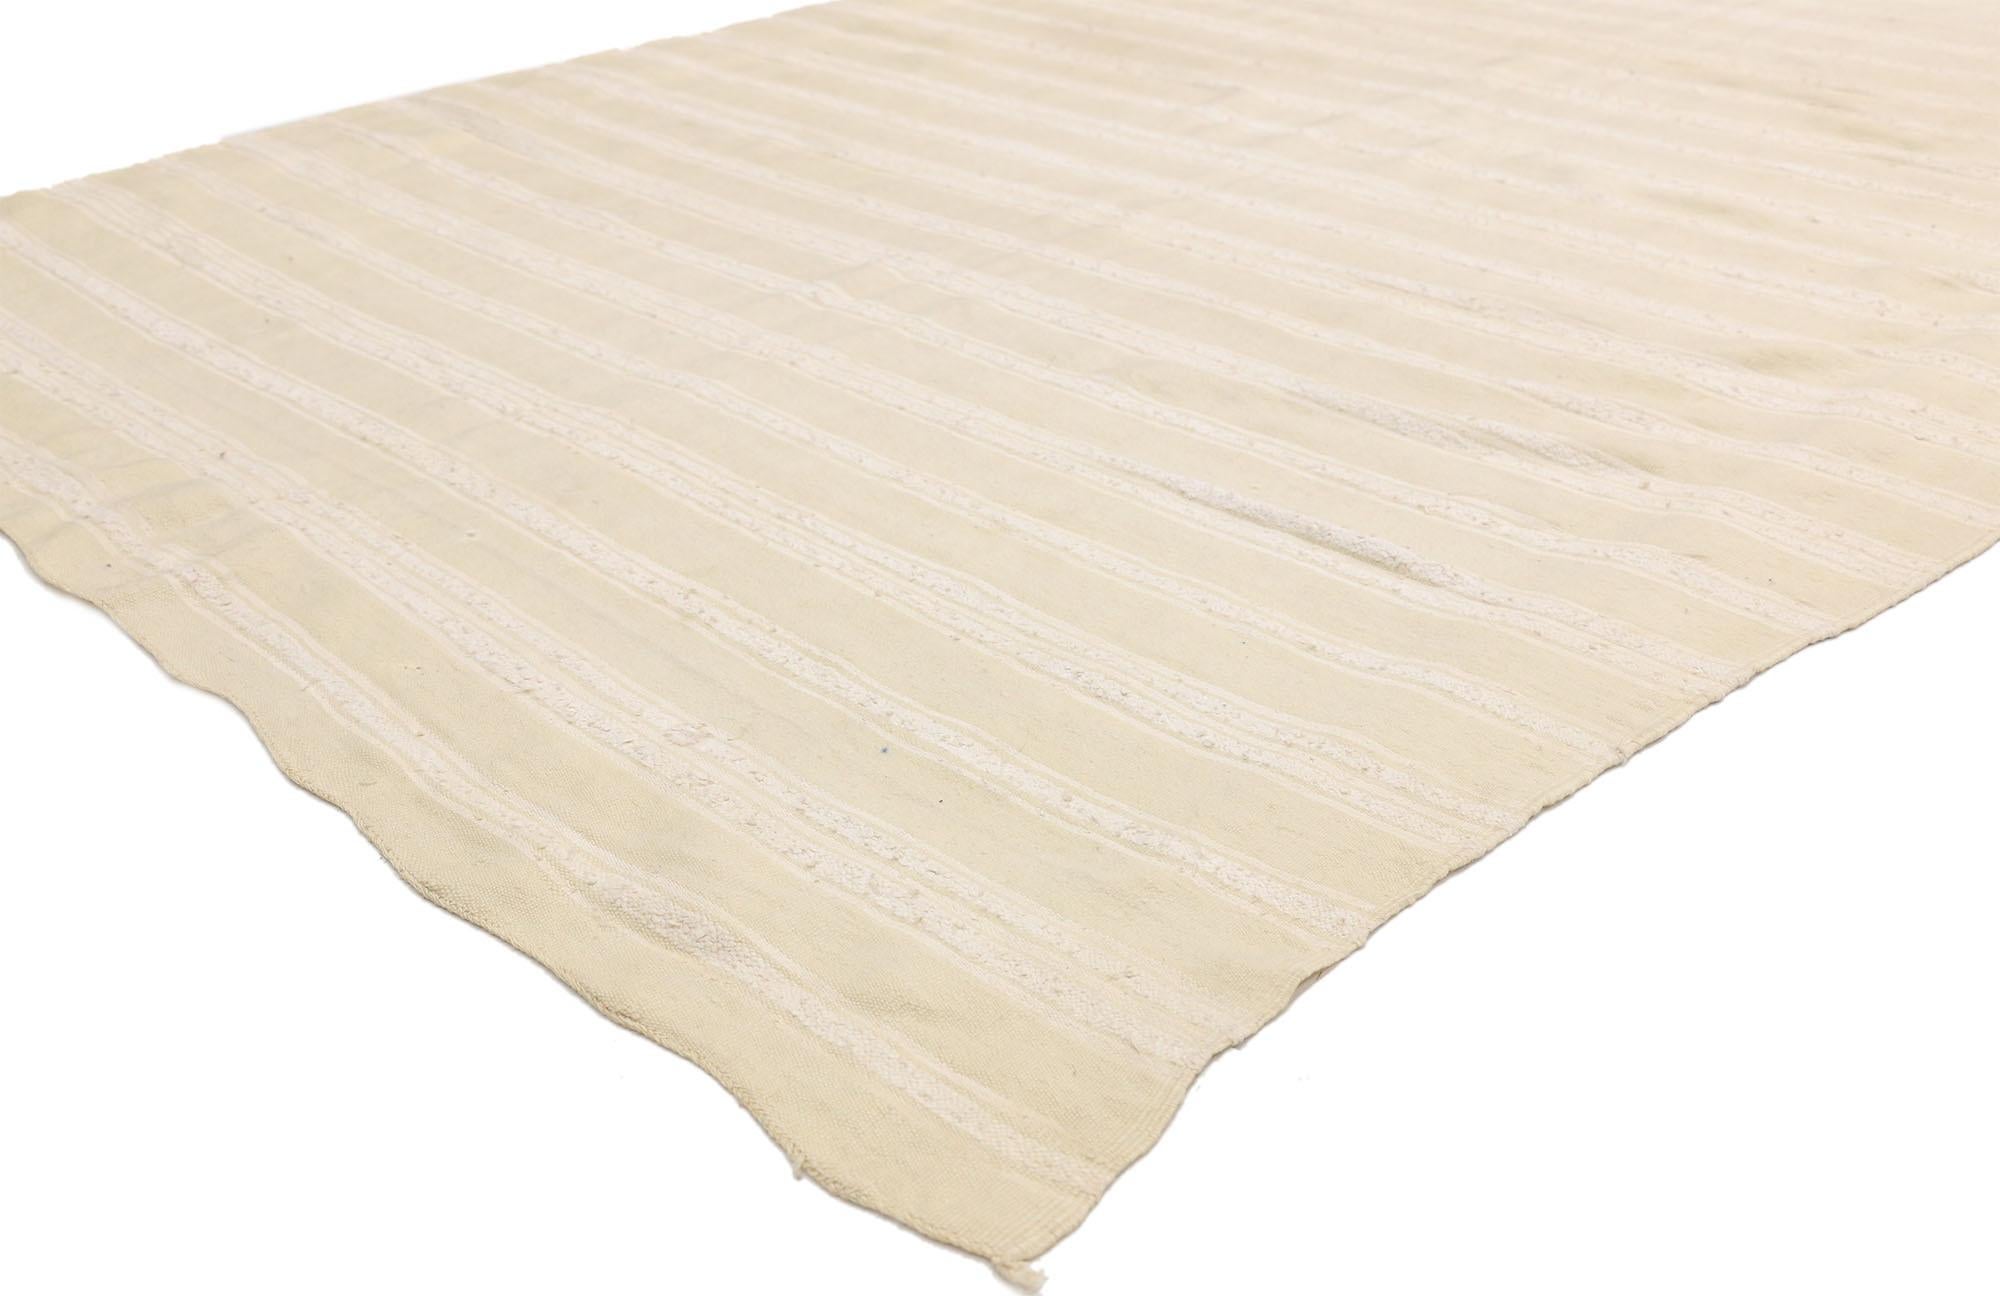 20816, Marokkanischer Kilim-Teppich im Vintage-Stil mit minimalistischem skandinavischem Stil, Teppich in neutraler Farbe. Dieser neutrale, flachgewebte Kilim-Teppich strahlt Funktion und Vielseitigkeit mit entspannter Hygge-Atmosphäre aus. Dieser